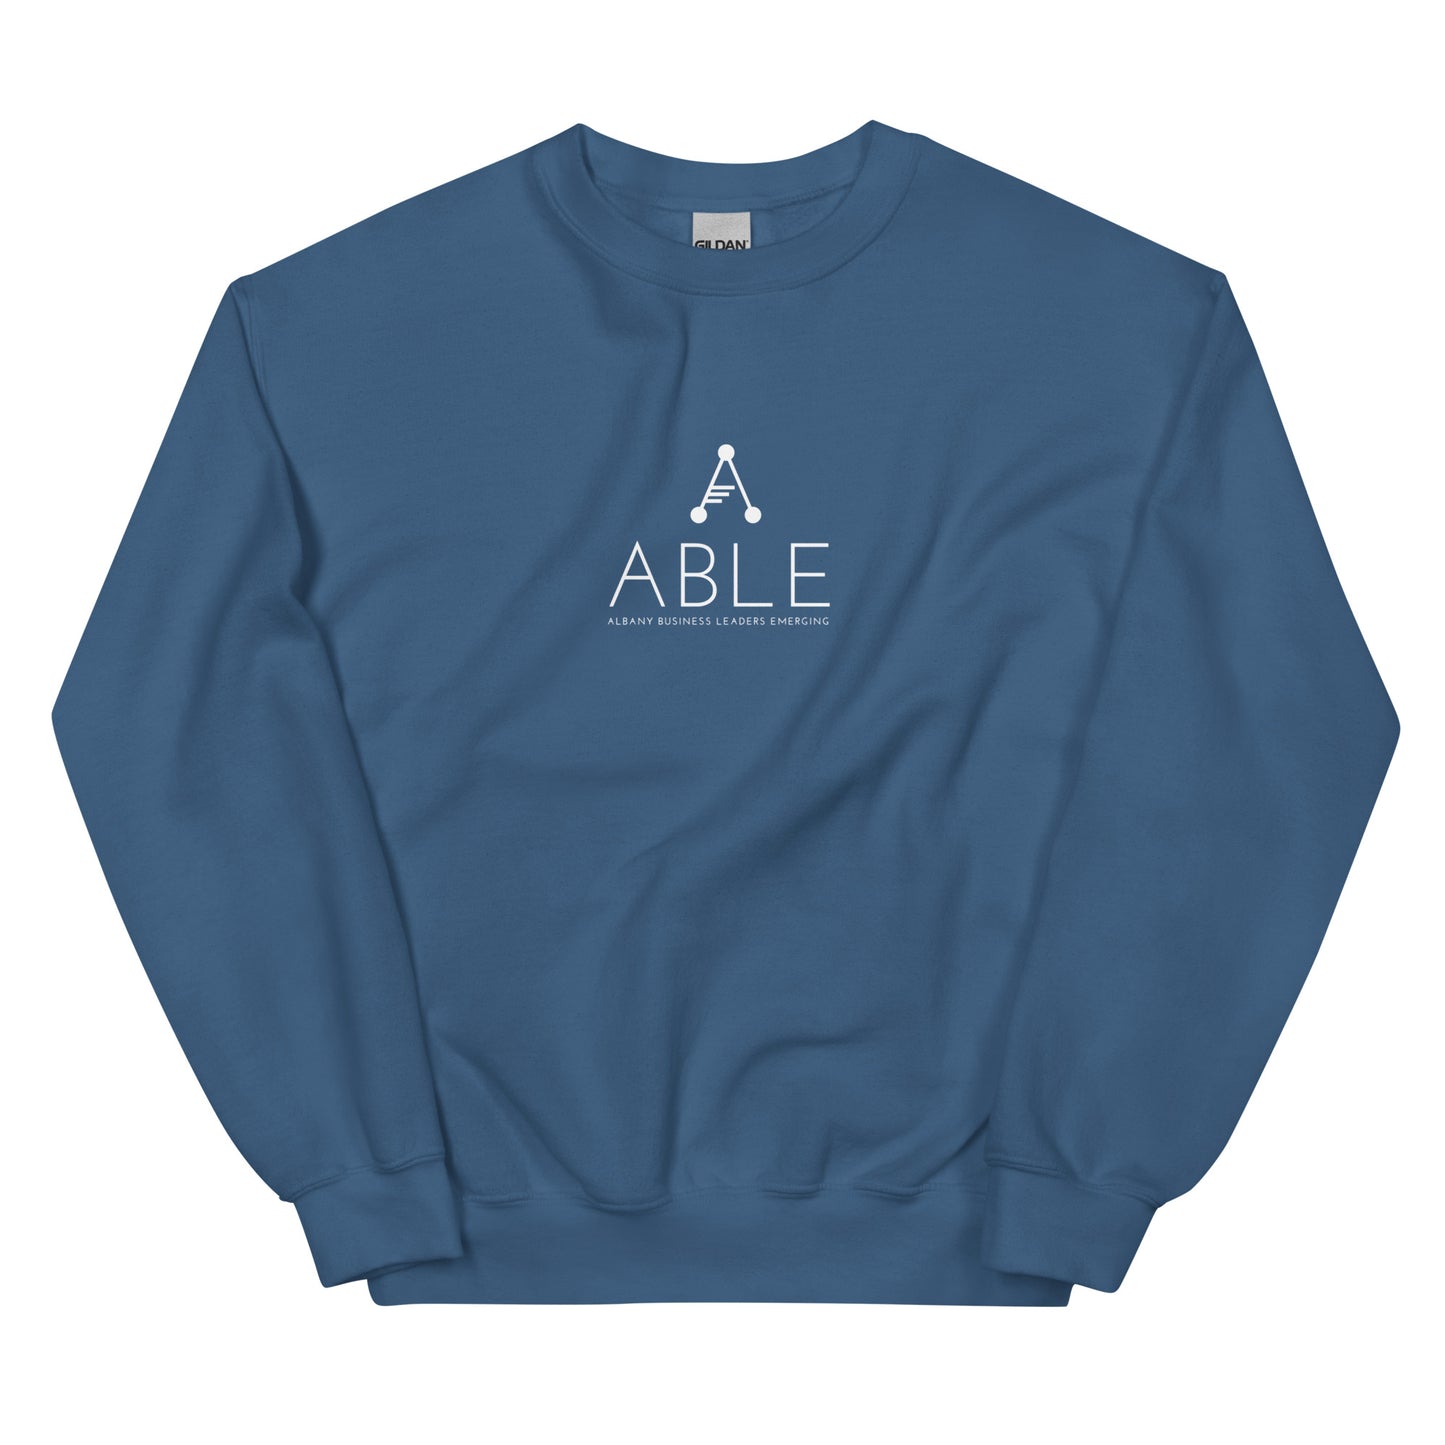 ABLE's Crewneck Sweatshirt